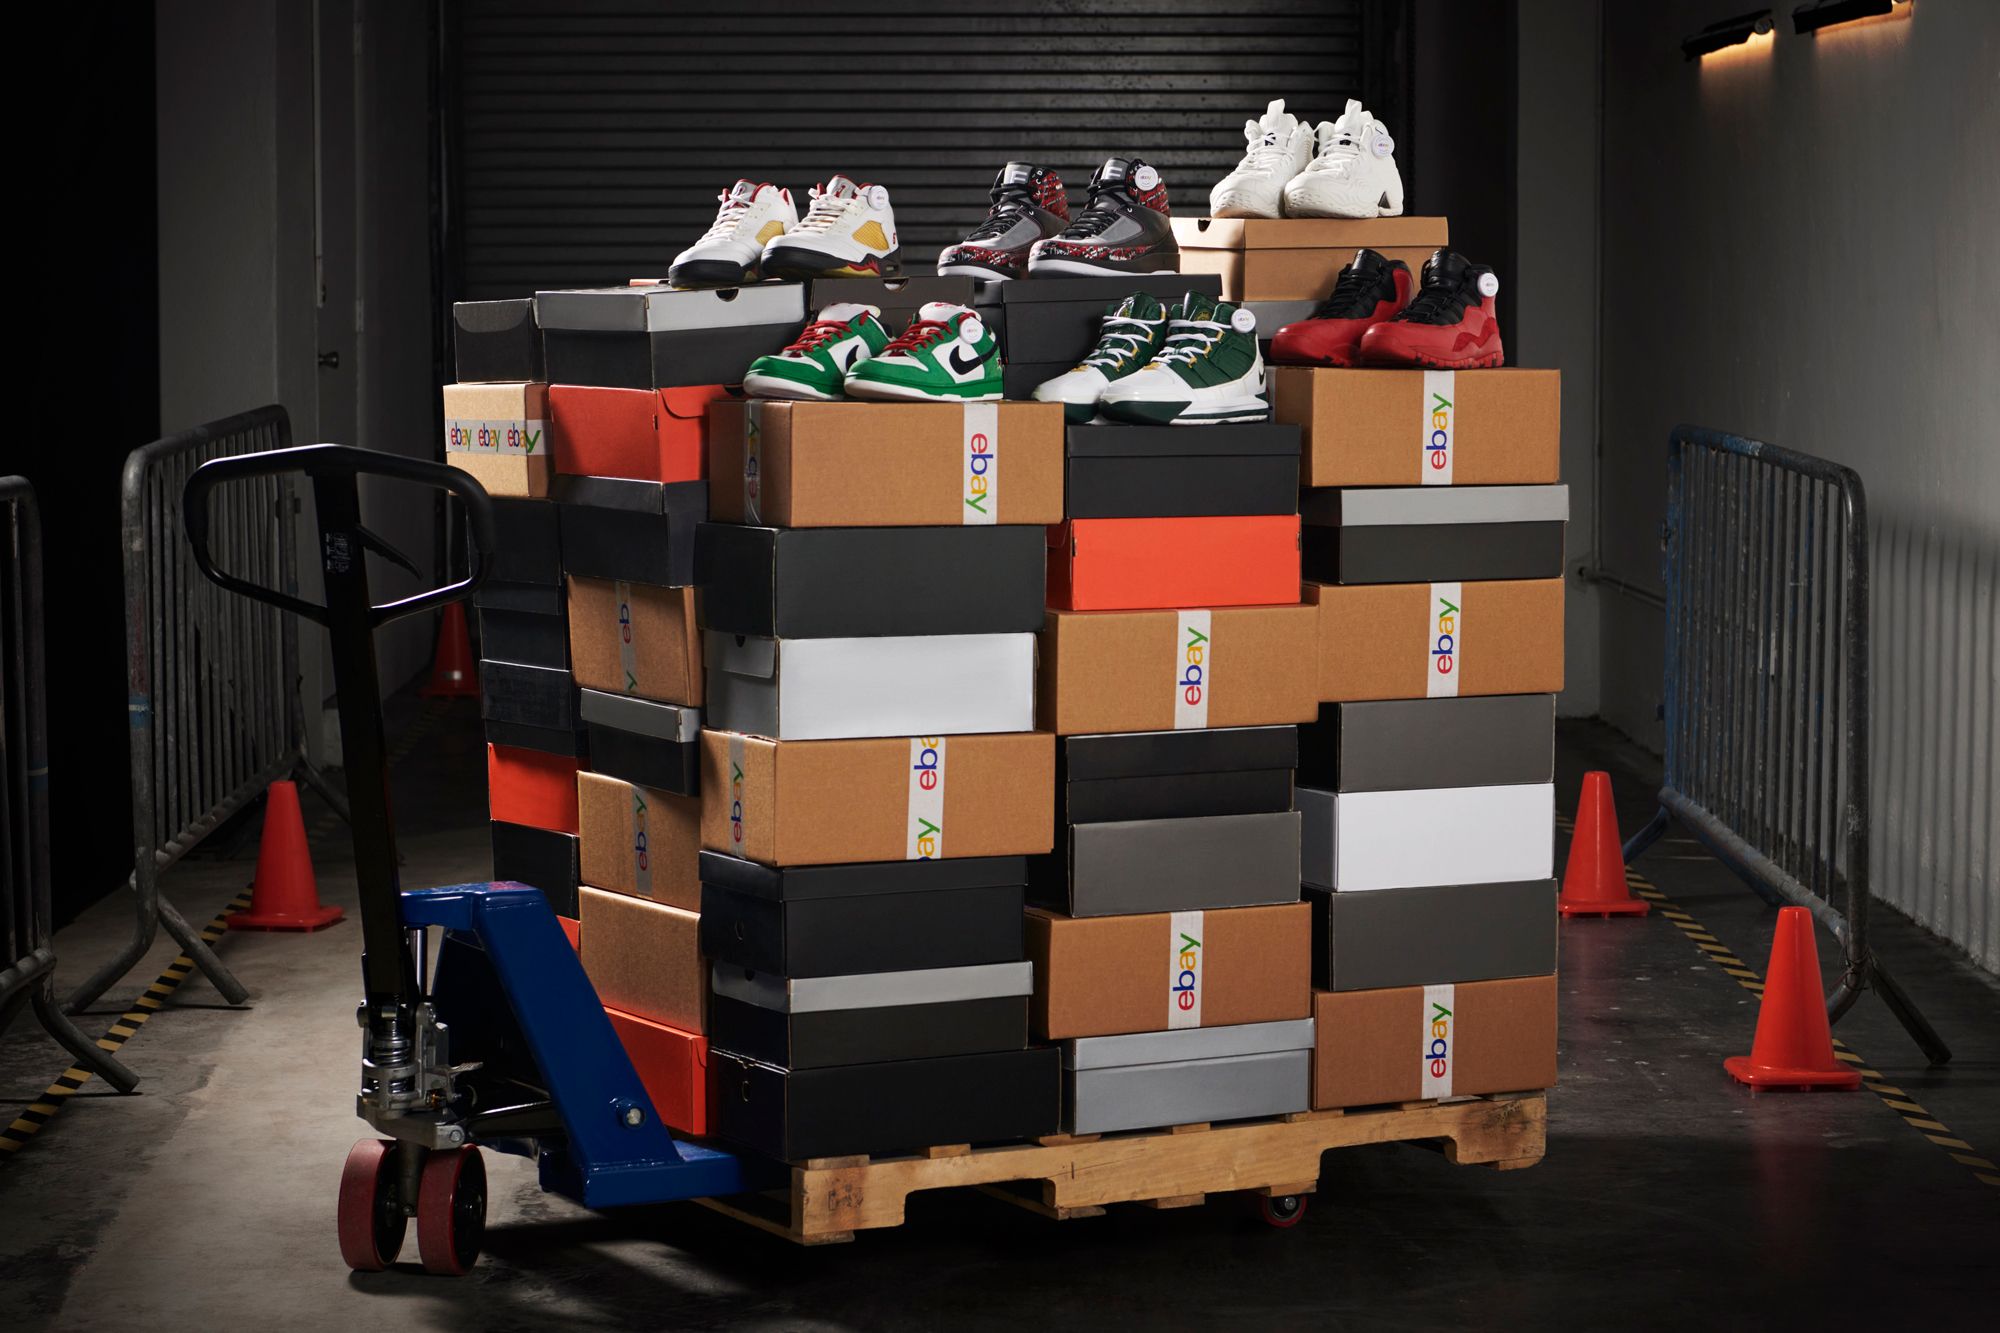 PJ Tucker x eBay Charity Sneaker Sale